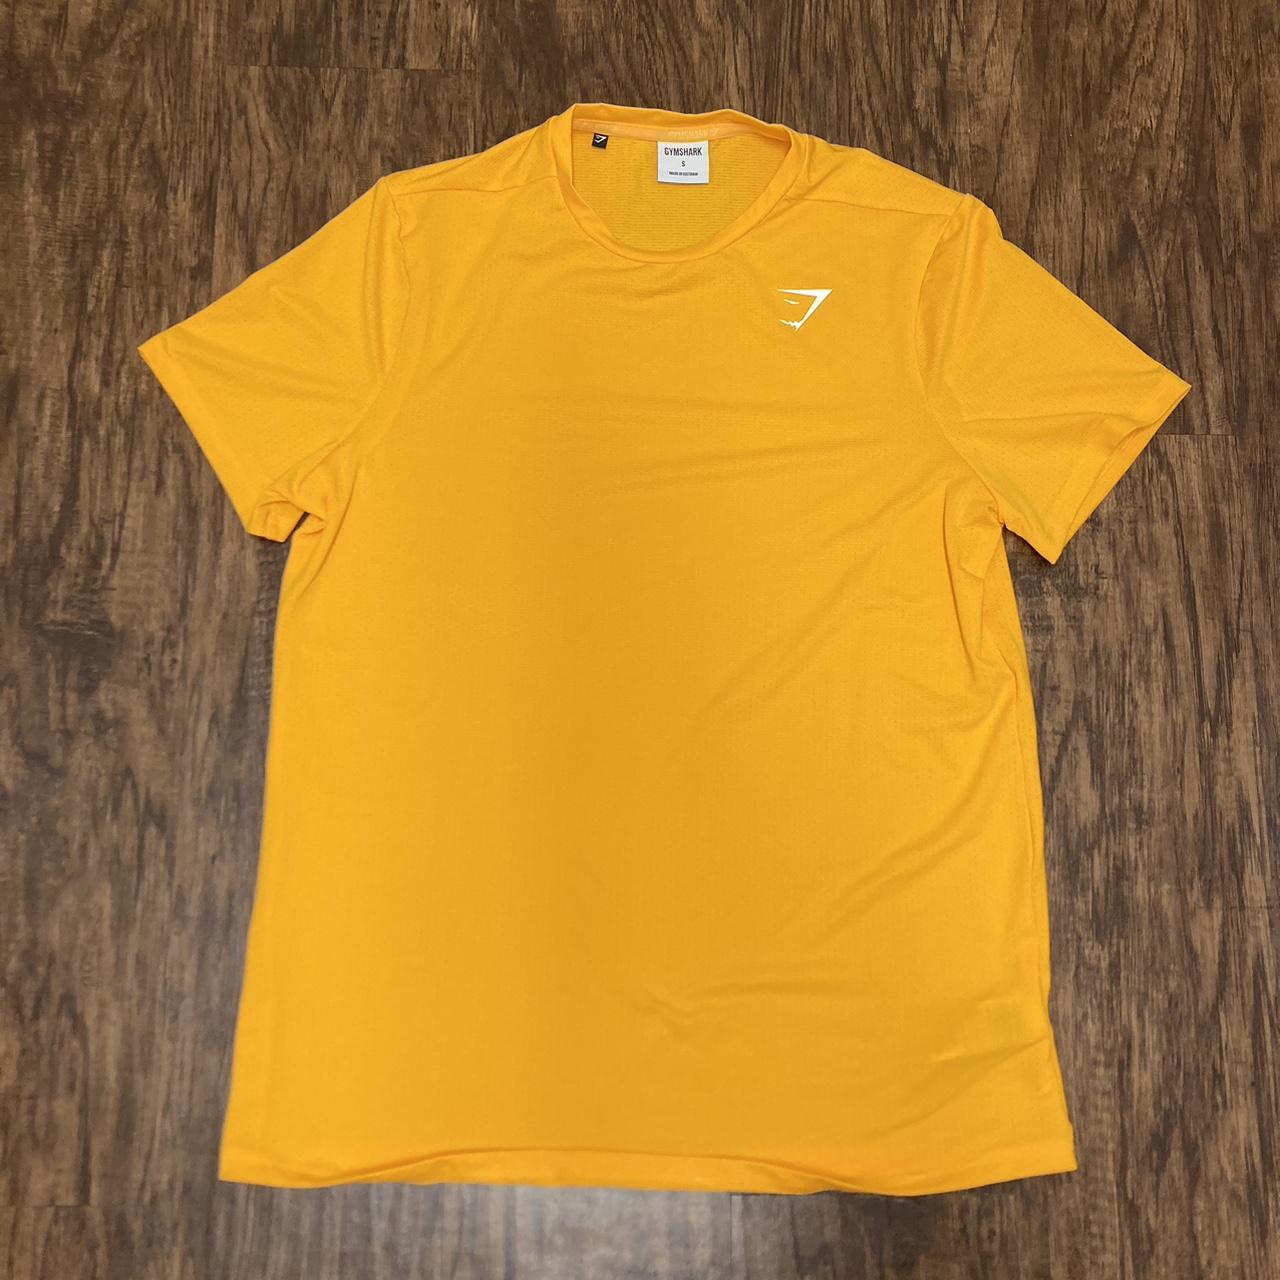 Orange GYMSHARK workout shirt - Depop